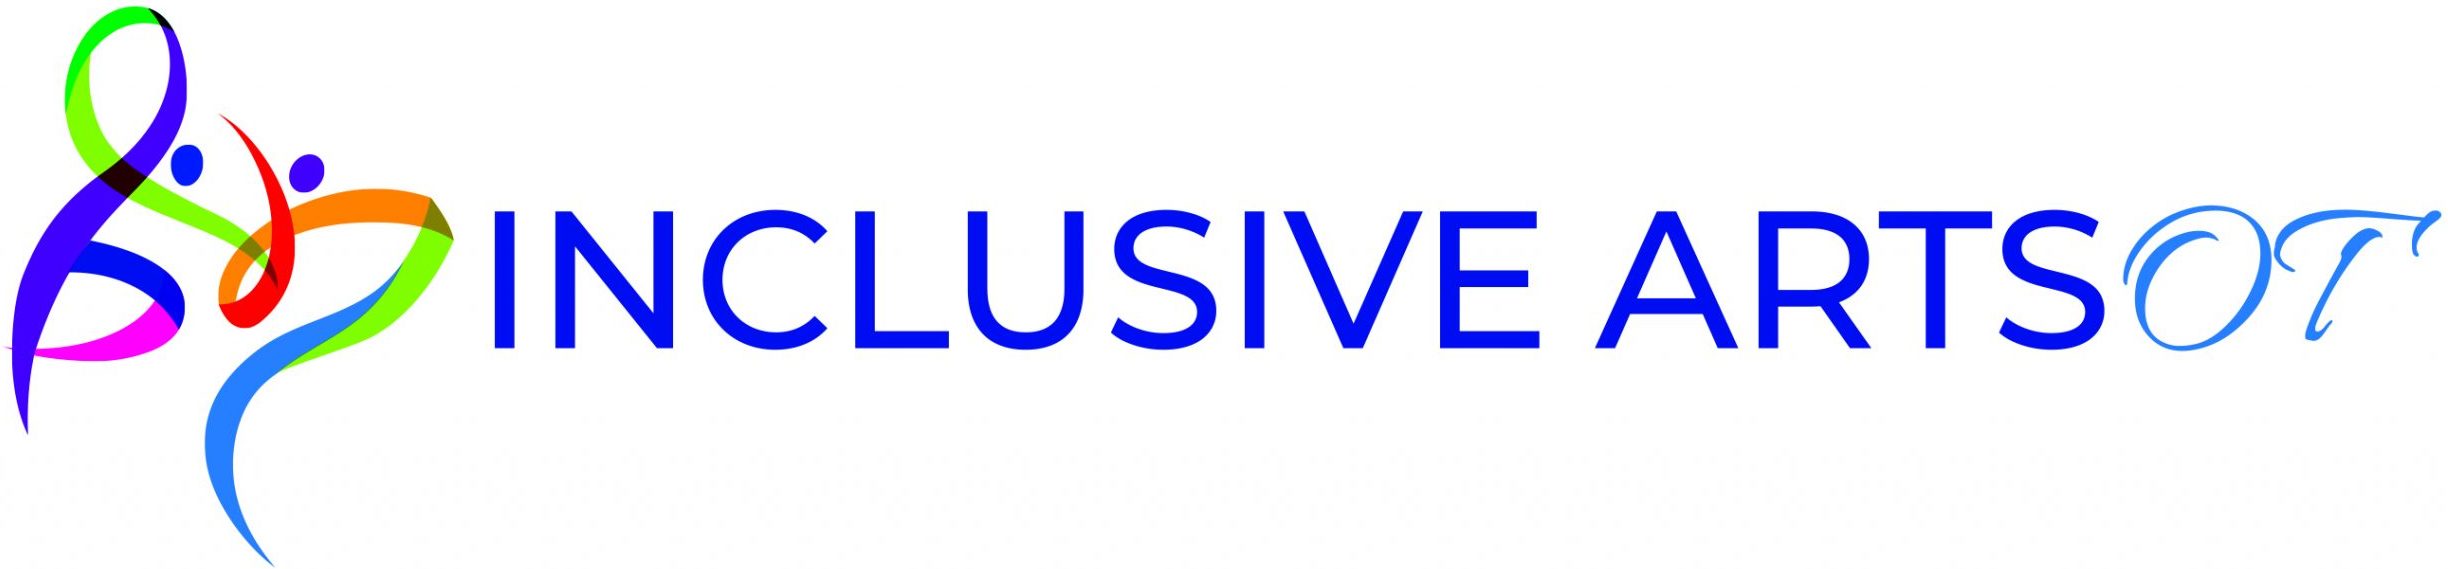 Inclusive Arts OT logo